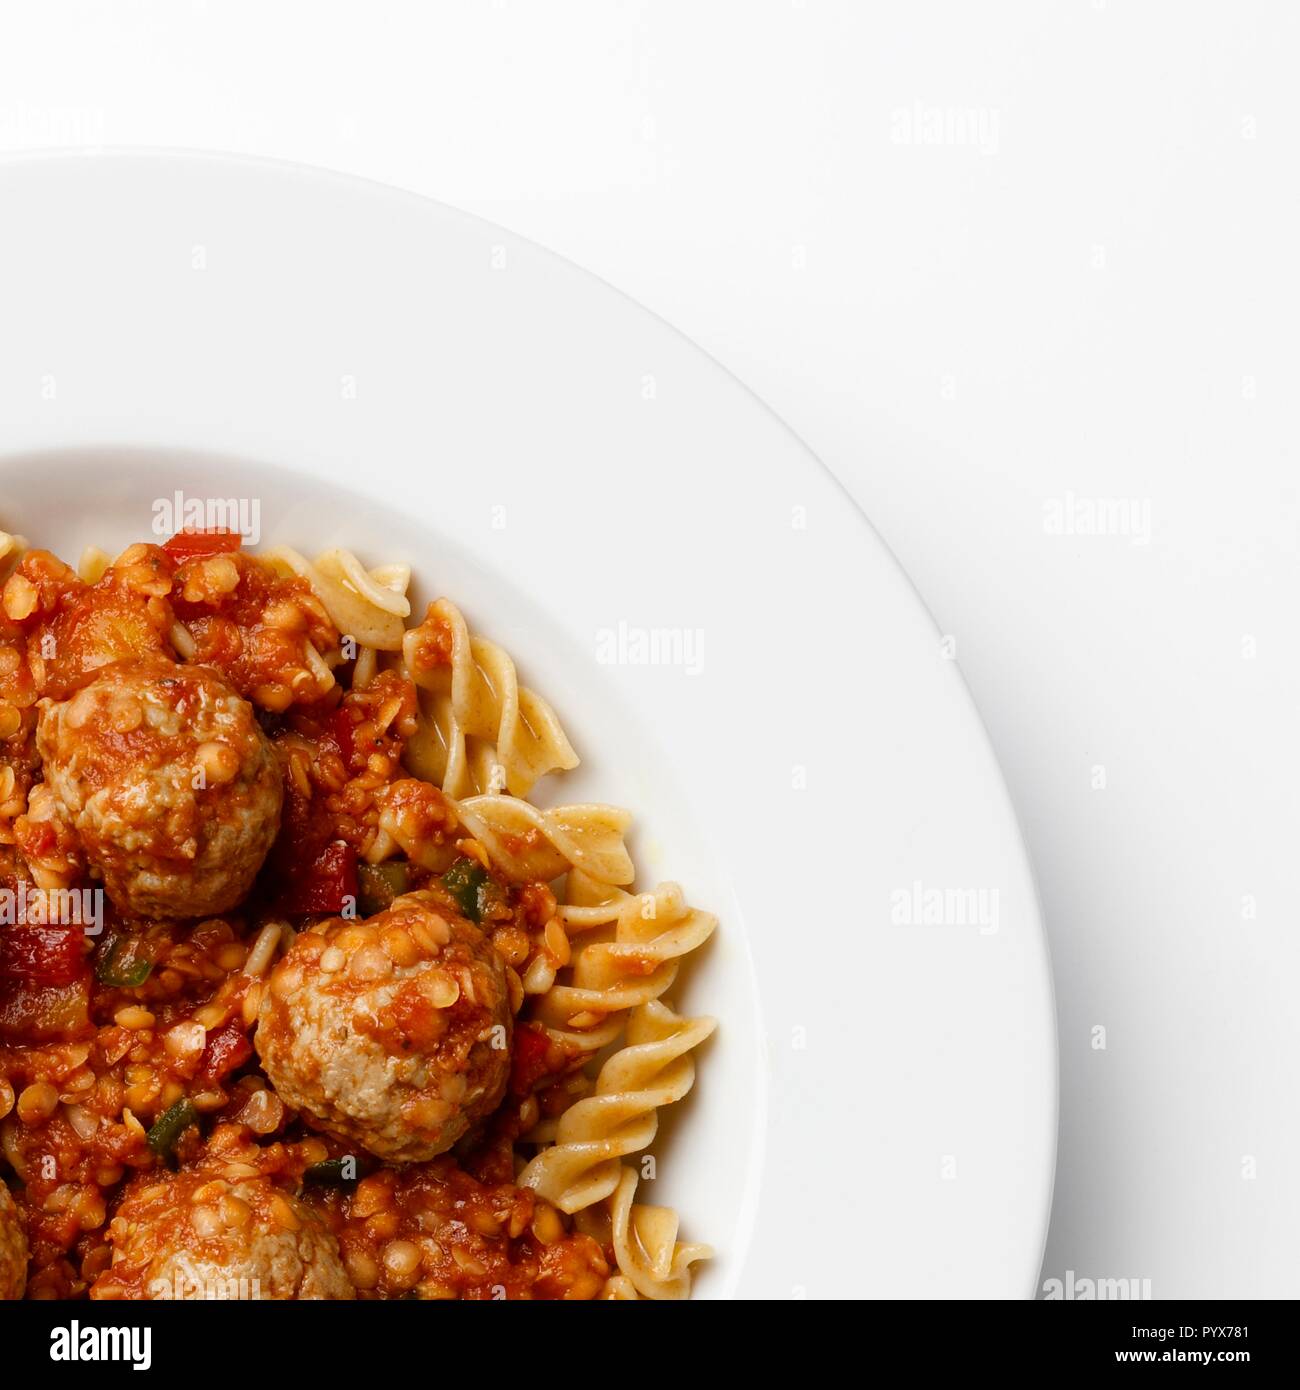 Ecke der Platte auf Fleischbällchen in eine Tomate Sause mit Paste Wendungen, auf einem weißen Hintergrund. Stockfoto